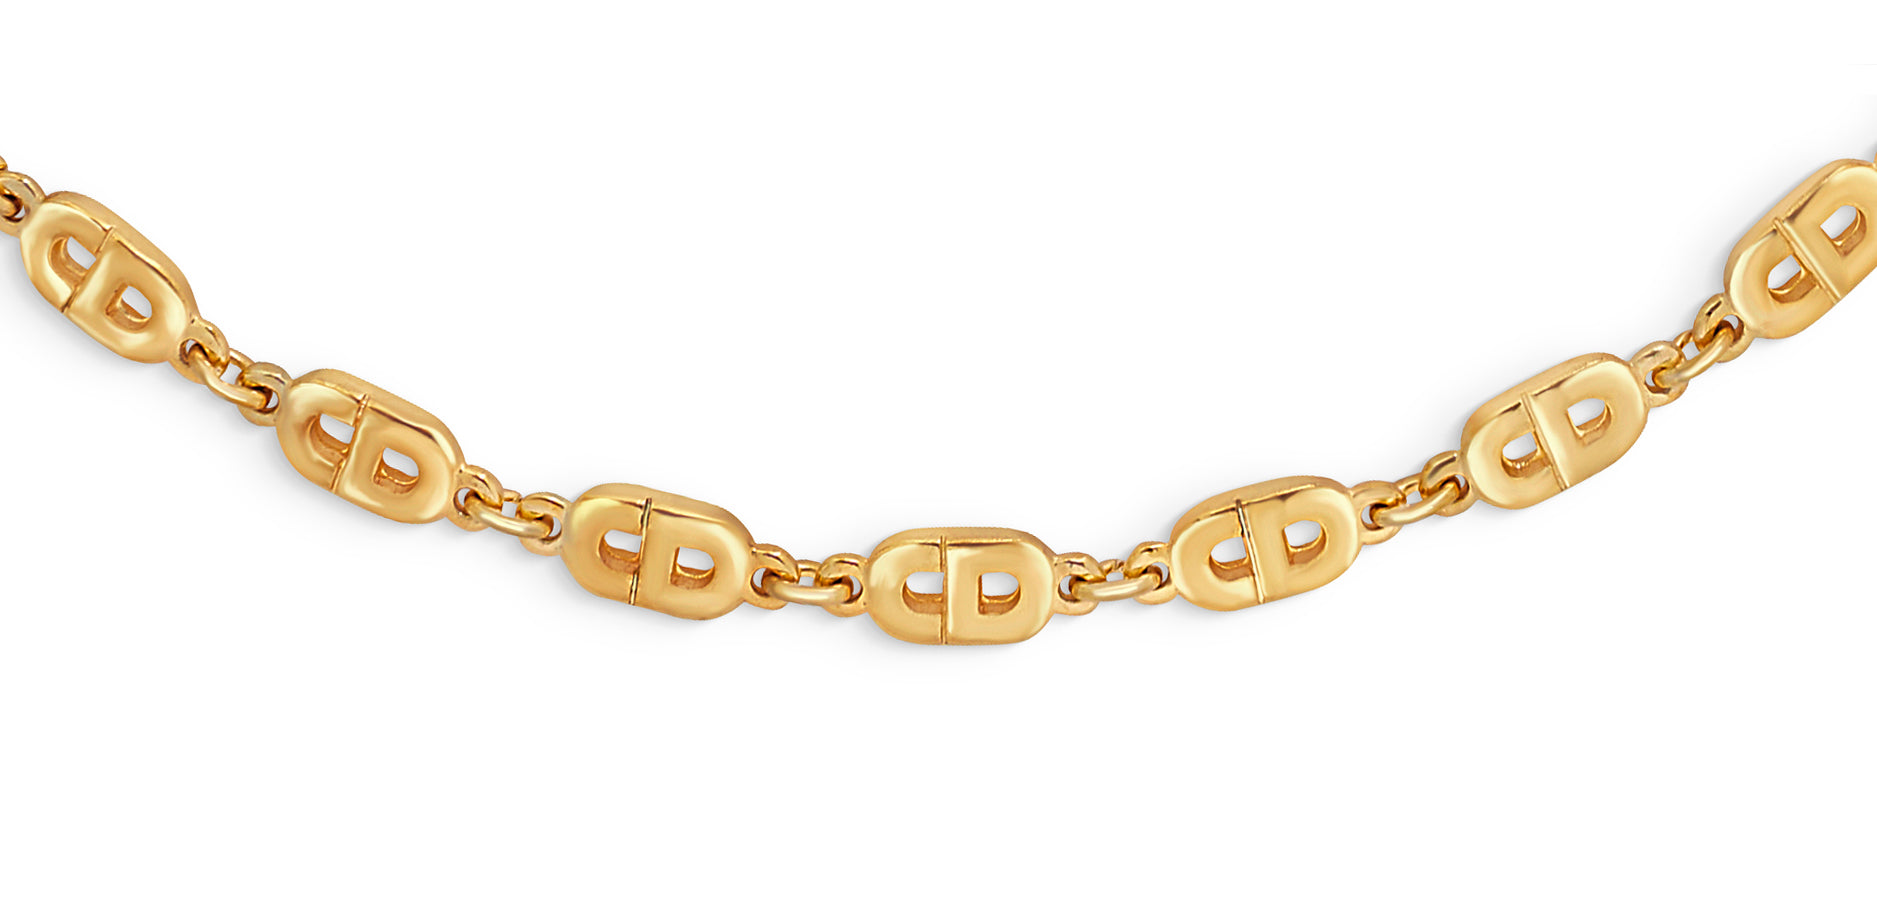 Deluxe Heavy H M Bracelet With FF BB Cd Branded Stamp, Original Dangle G  Pendant Gold, Earrings, And Letter G Choker, 45cm Extender Chain For Girls  From Tiffvip, $13.91 | DHgate.Com